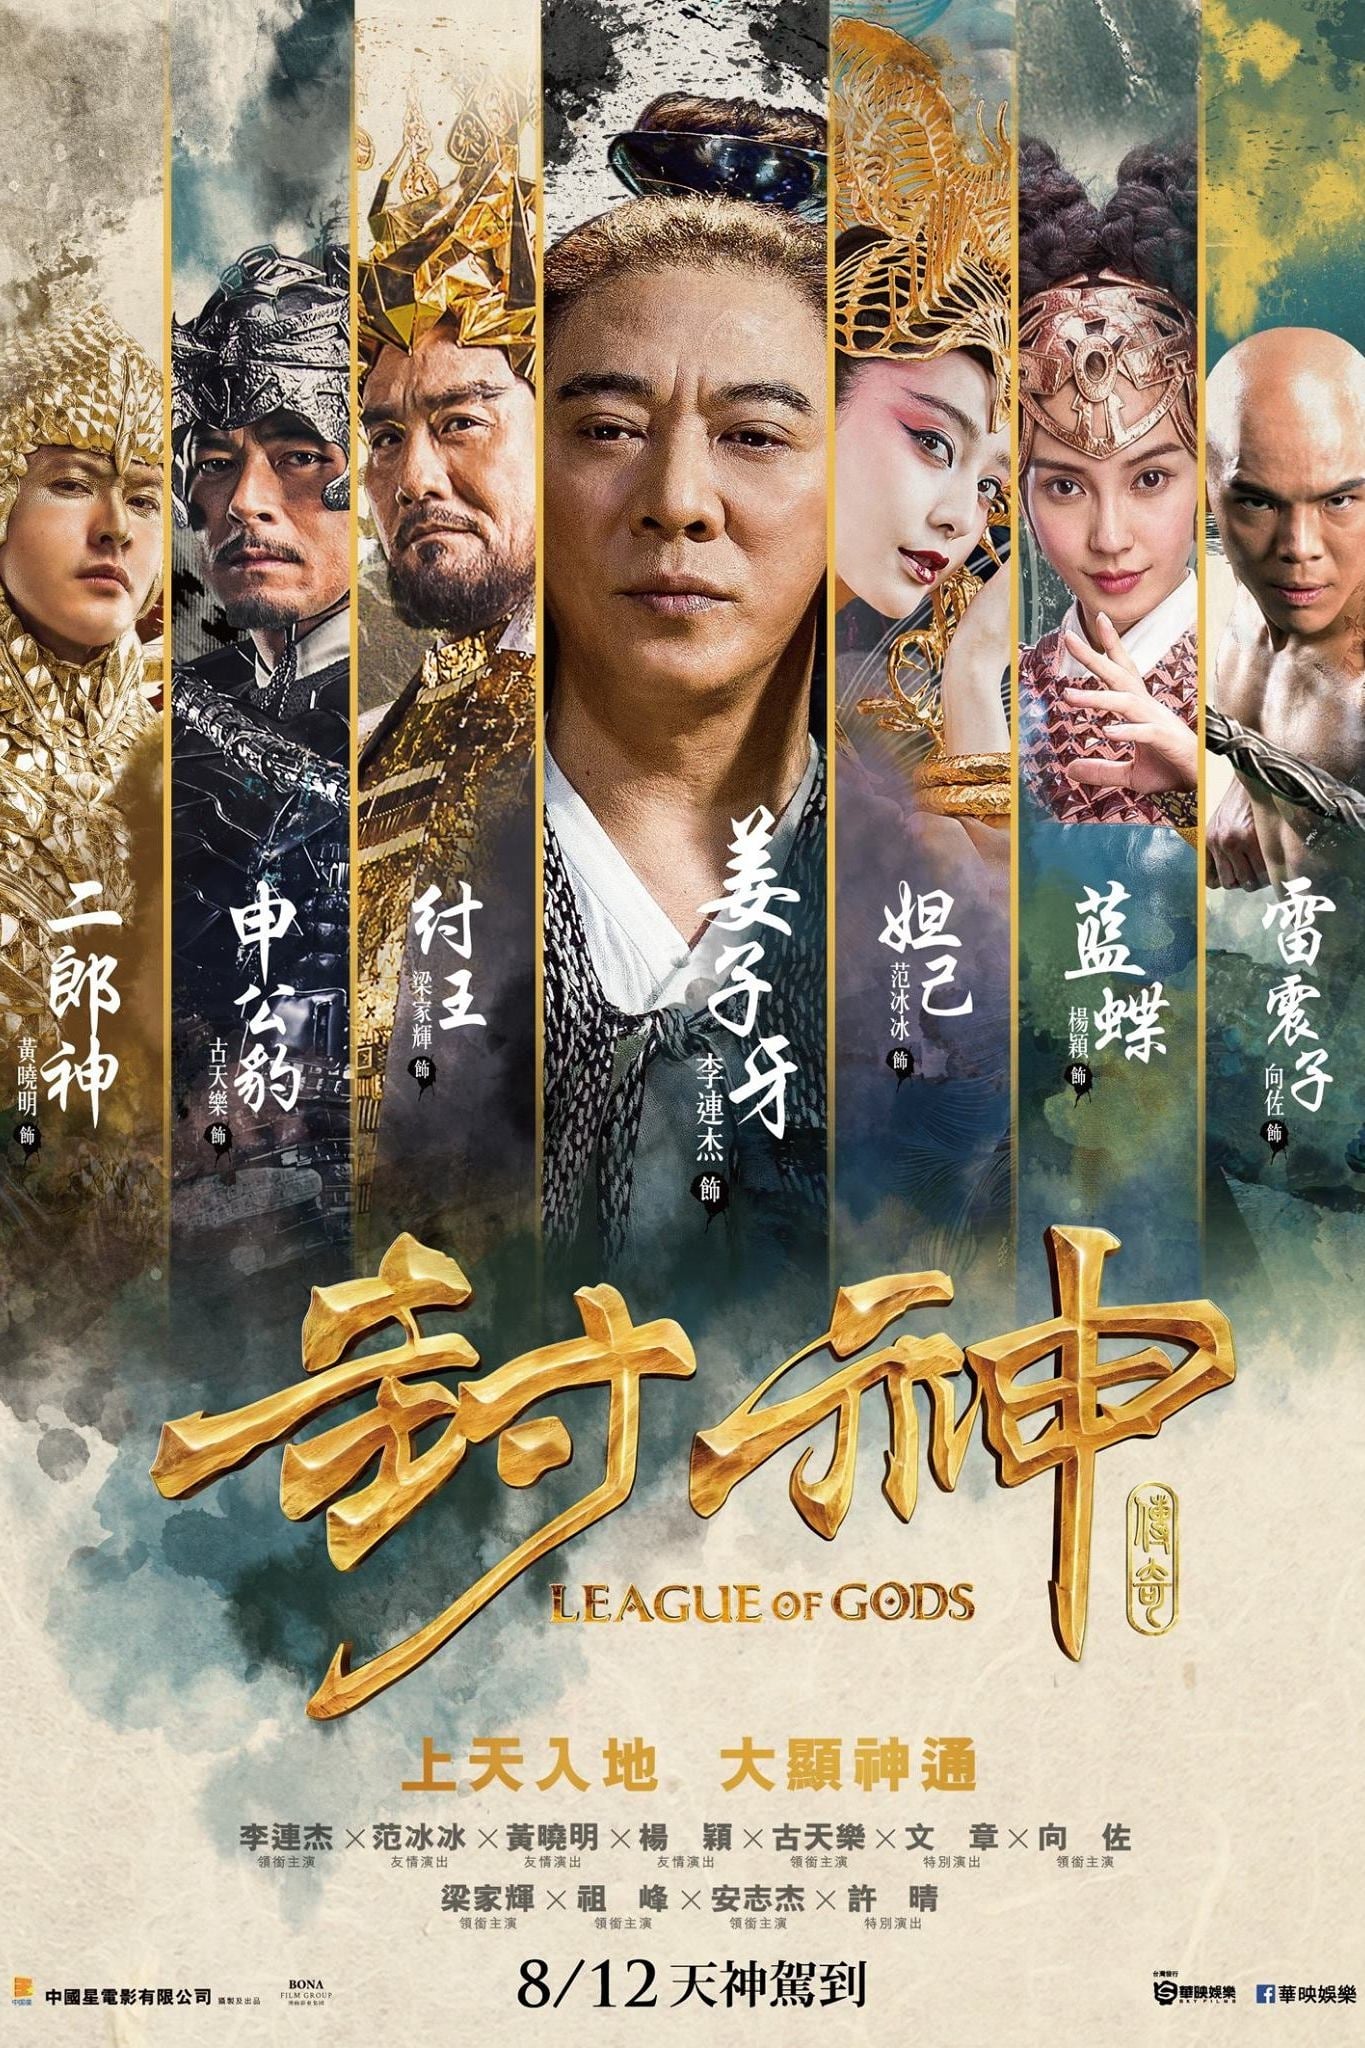 Phong Thần Bảng (League of Gods) [2016]